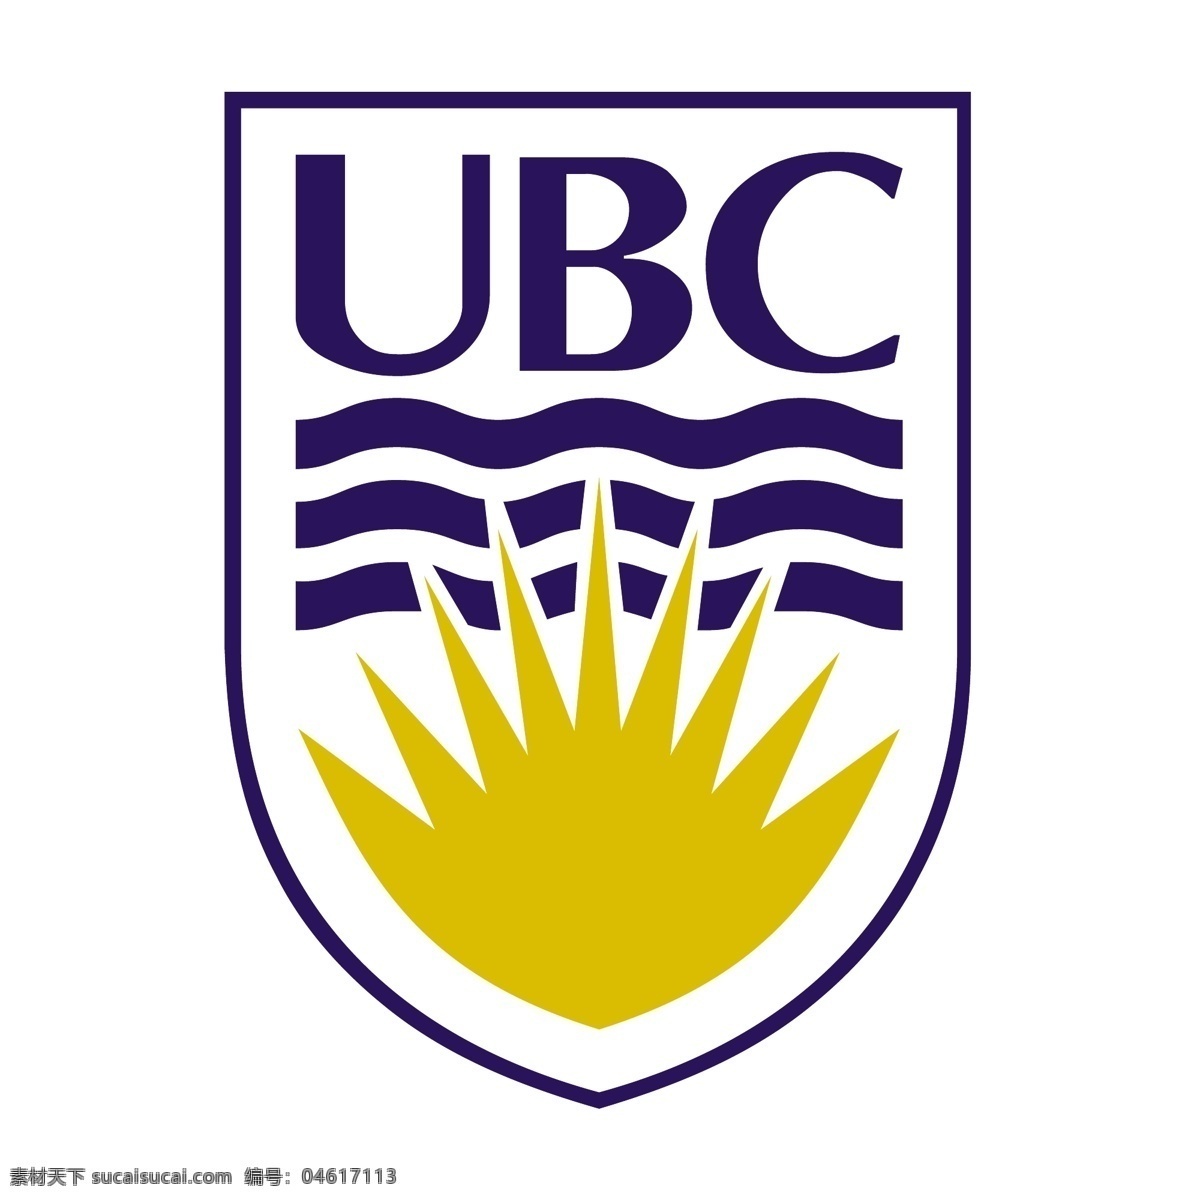 哥伦比亚大学 logo ubc 加拿大 名校 全球50名校 名校标志 加拿大学校 标志图标 企业 标志